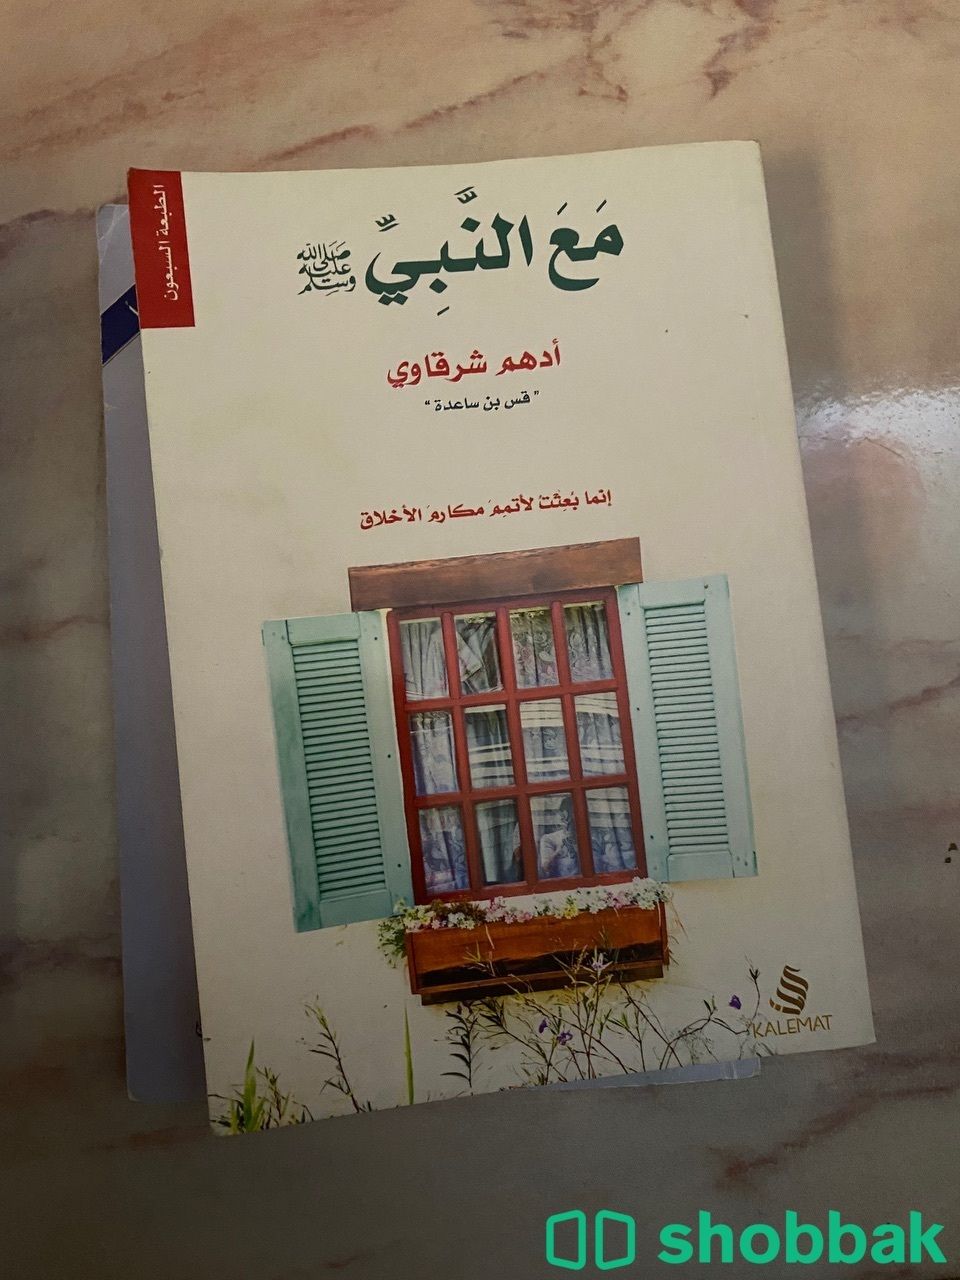 كتاب مع النبي - ادهم شرقاوي  Shobbak Saudi Arabia